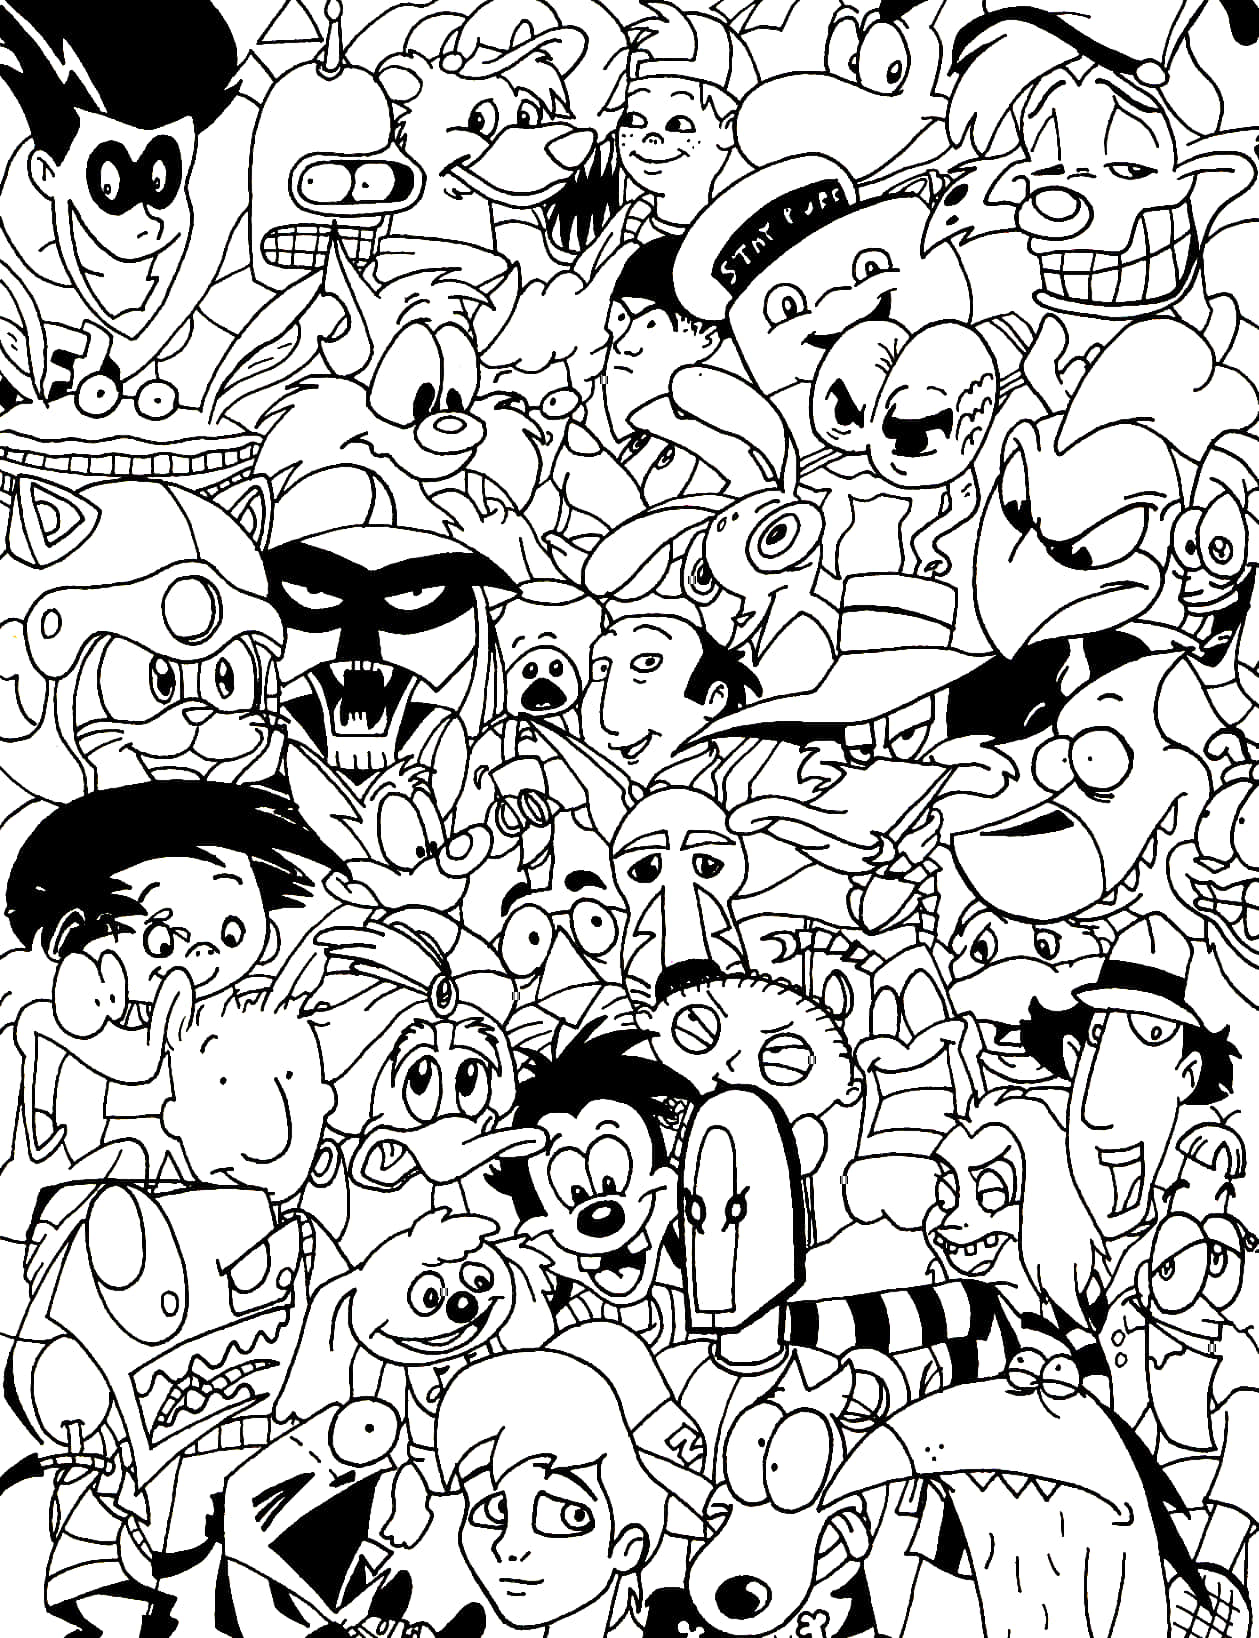 Páginaspara Colorear De Personajes De Dibujos Animados.